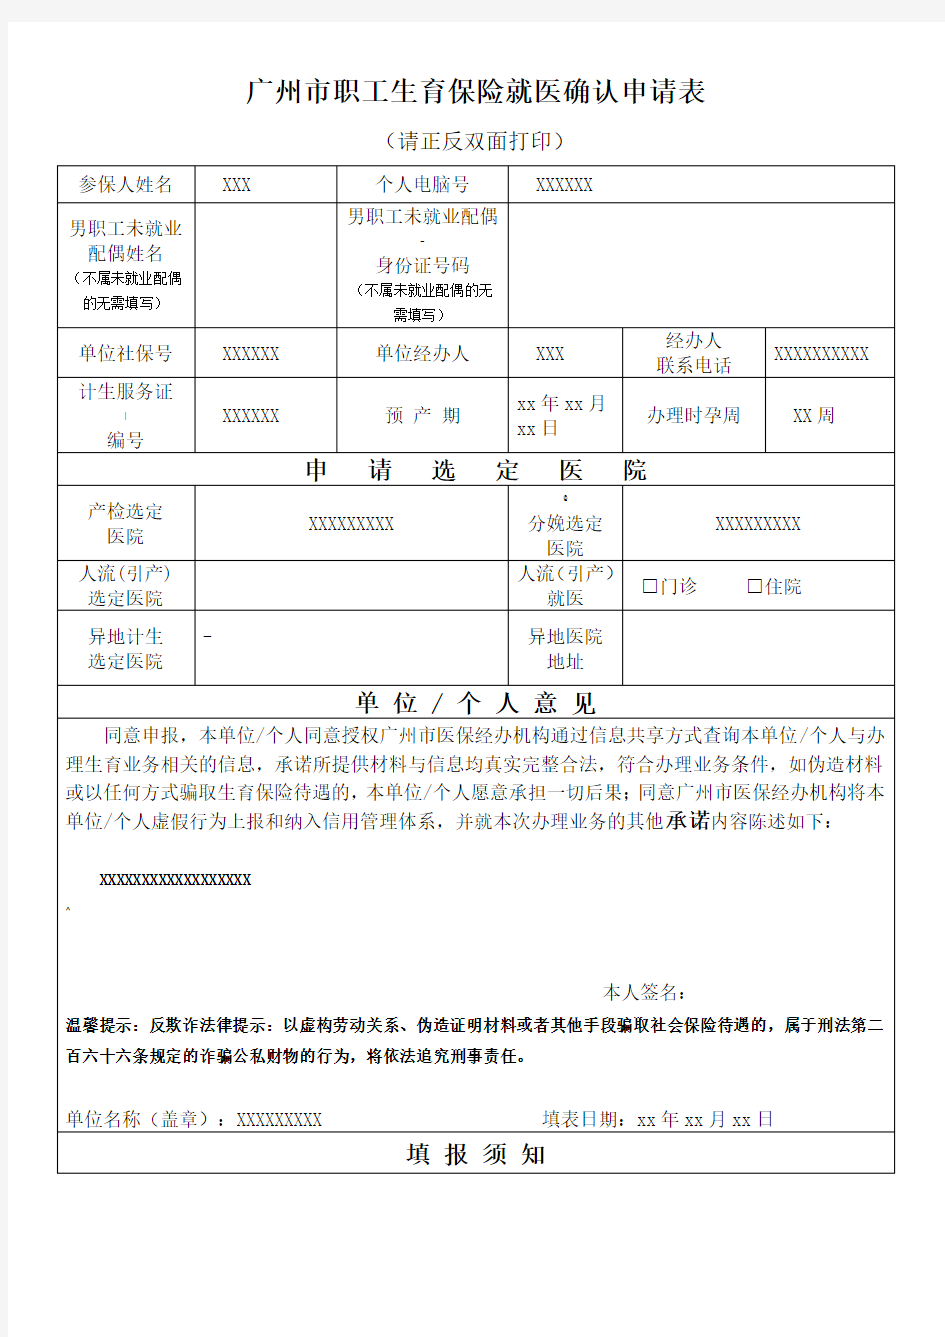 广州市职工生育保险就医确认申请表(2019年版)